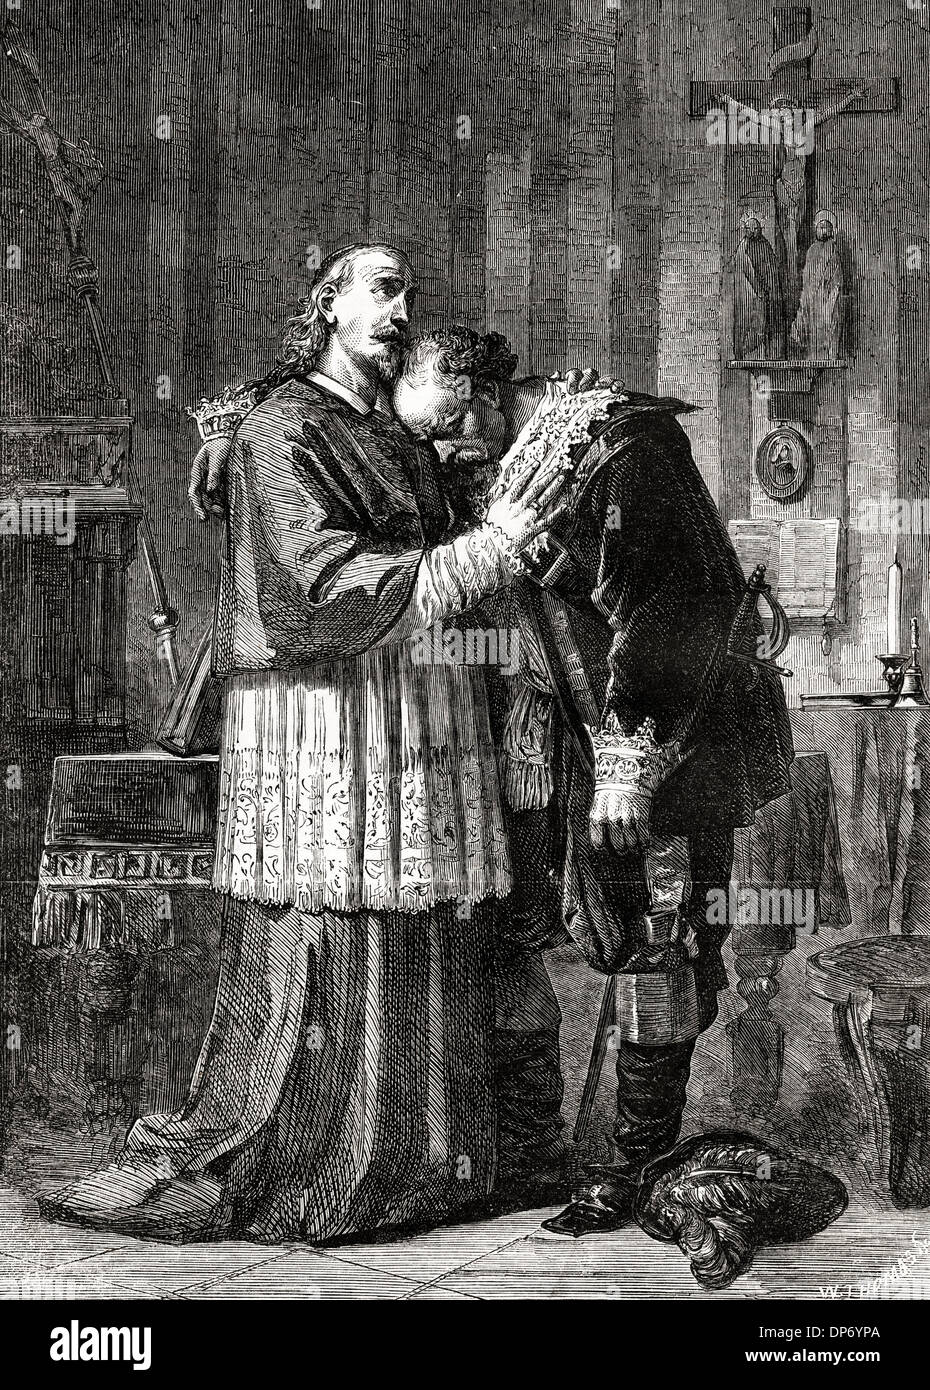 L'INNOMINATO des italienischen Künstlers Alessandro Guardassoni (1819-1888) von Bologna gemalt. Viktorianischen Holzschnitt, Kupferstich, ca. 1862 Stockfoto